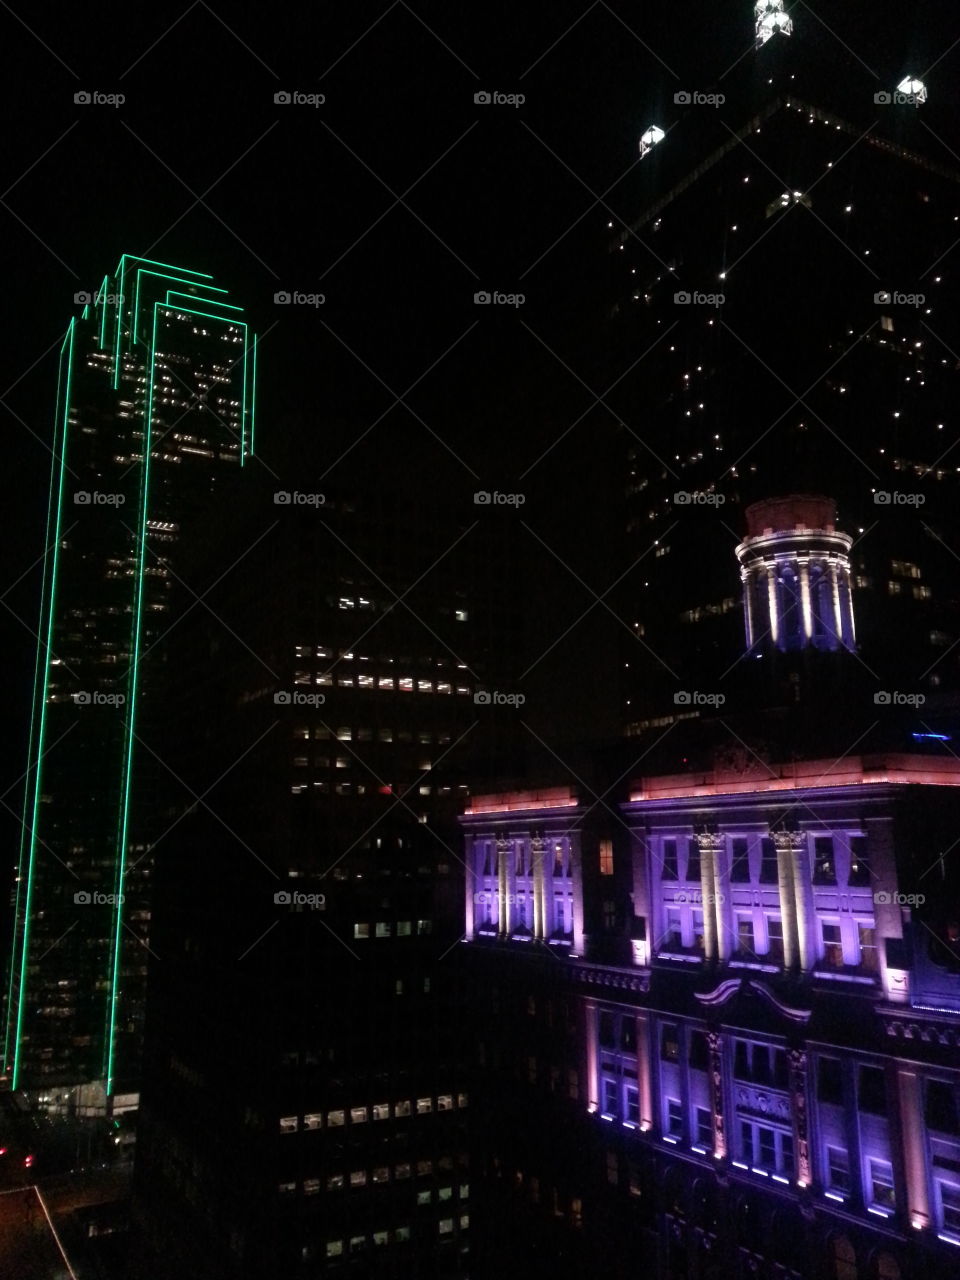 DC9?. Dallas, TX at night